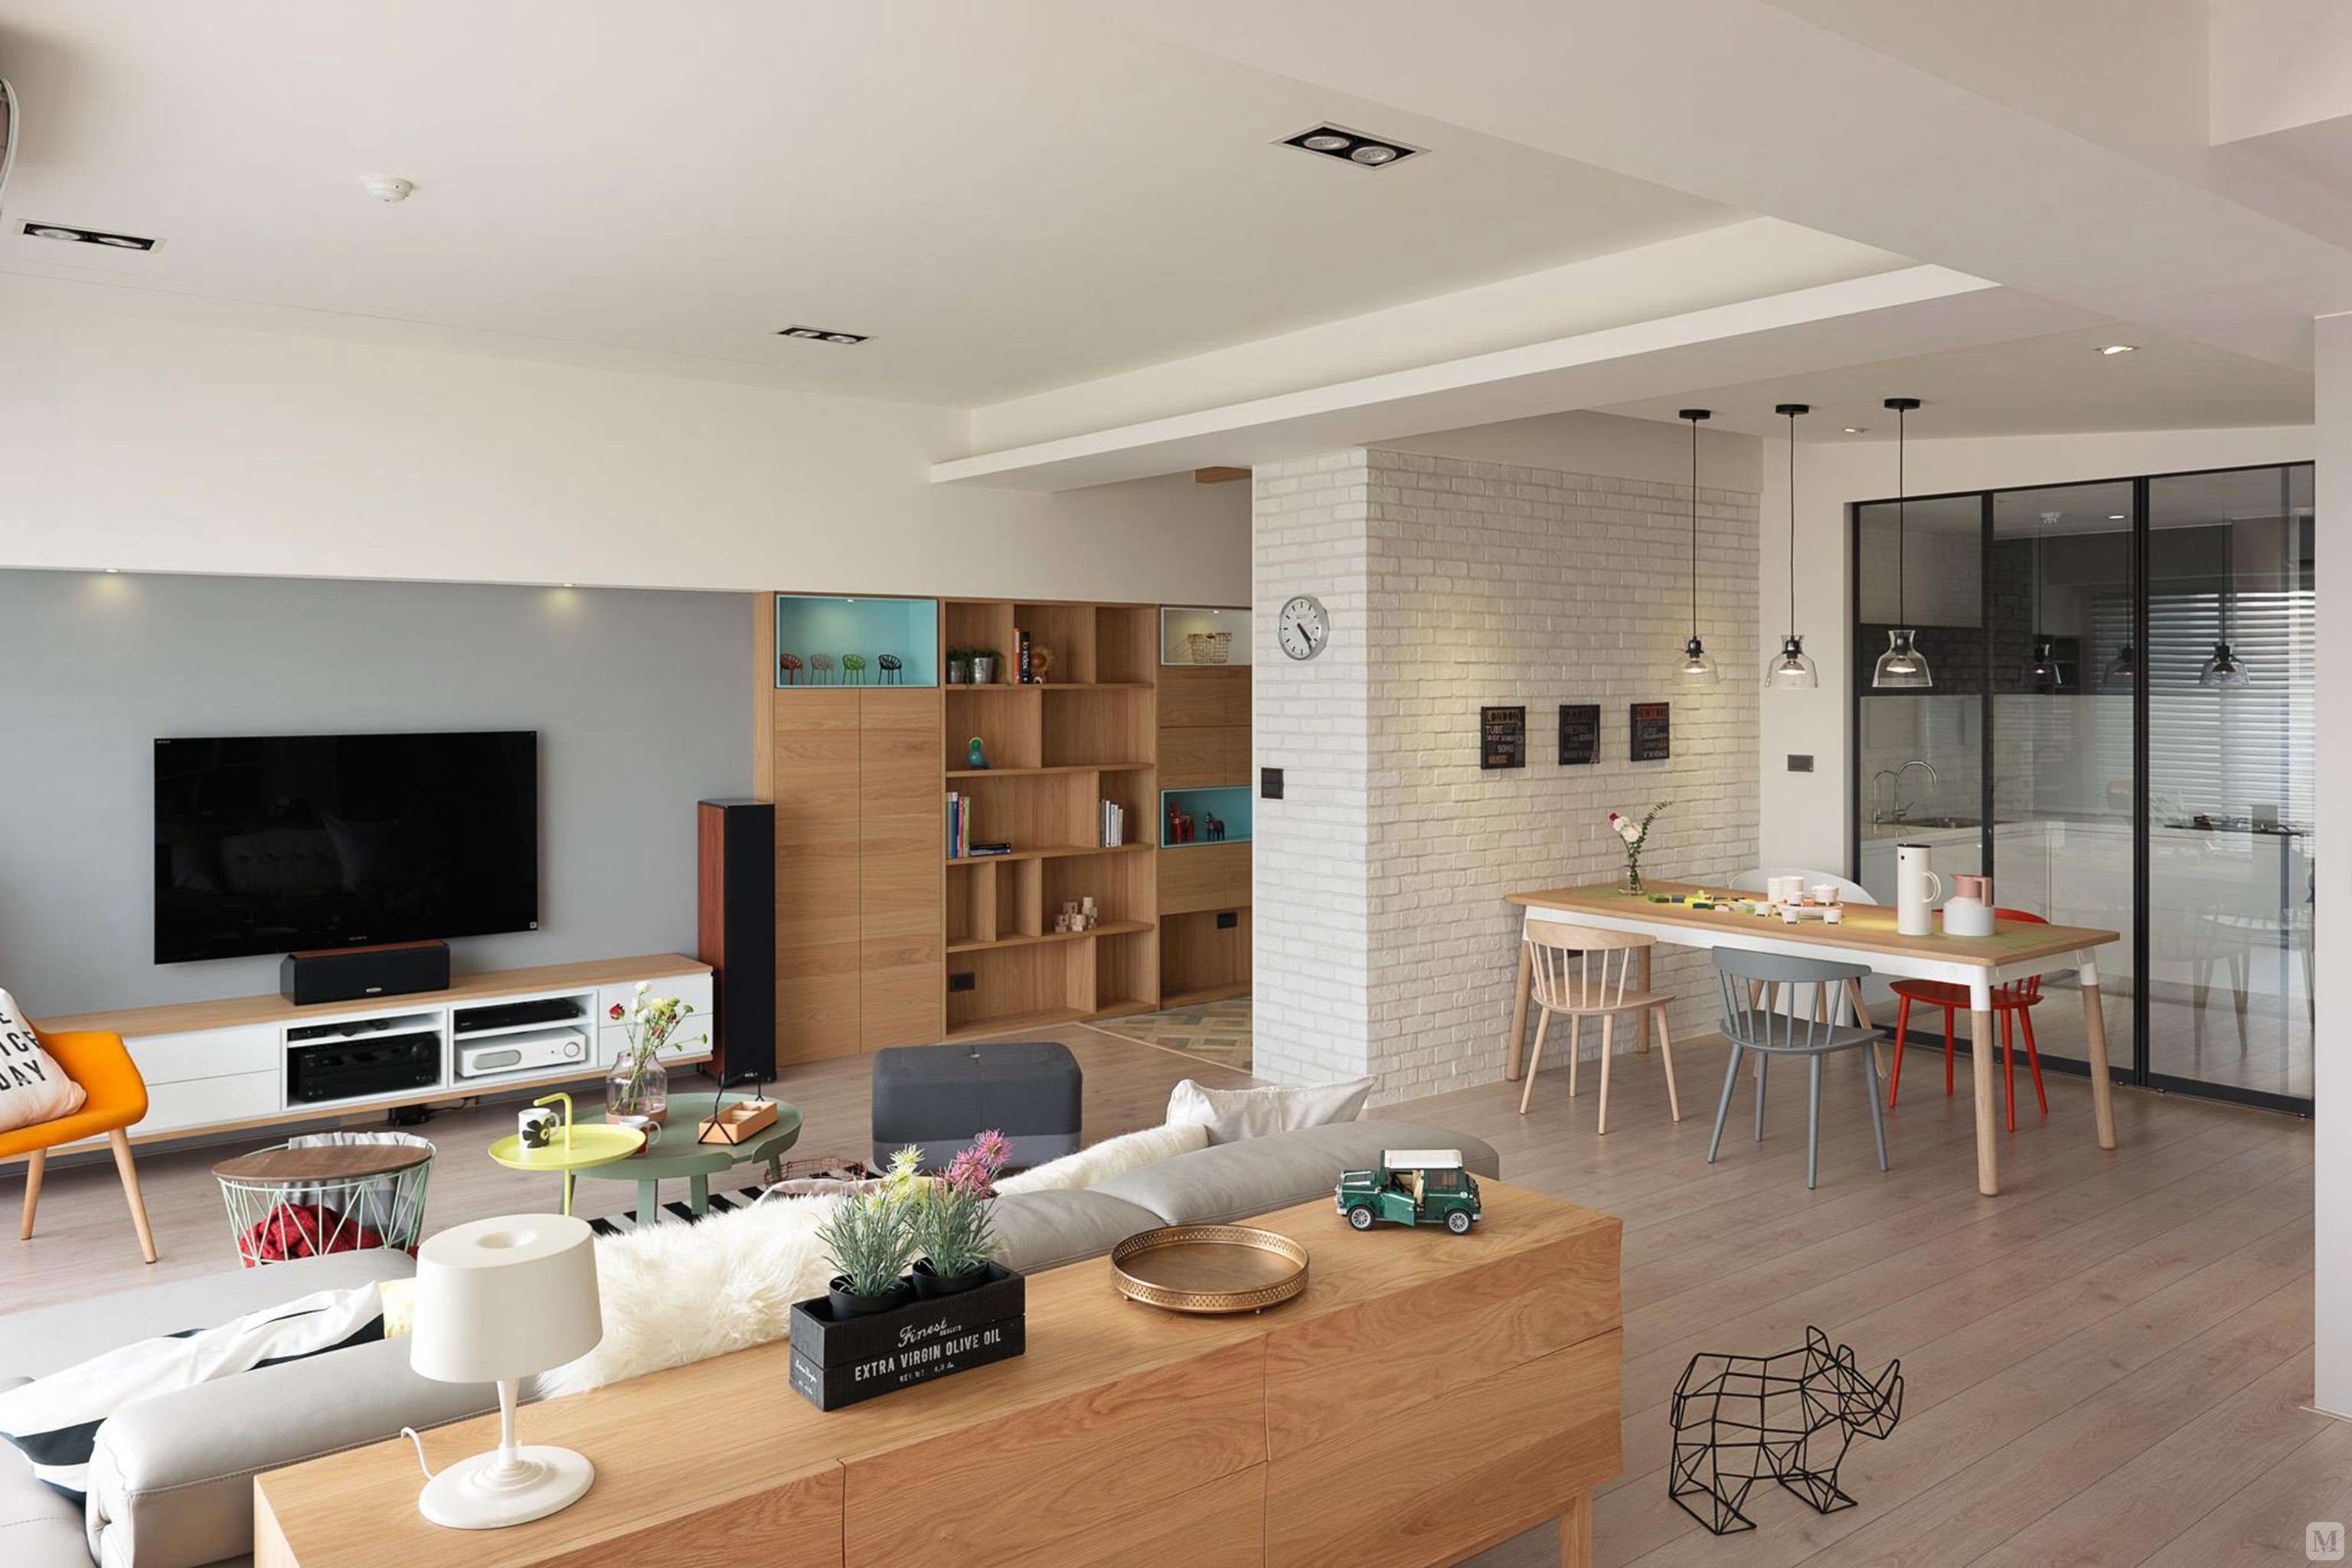 一个空间里面的家具可以搭配不同的材质,比如松木家具,黑色和白色的